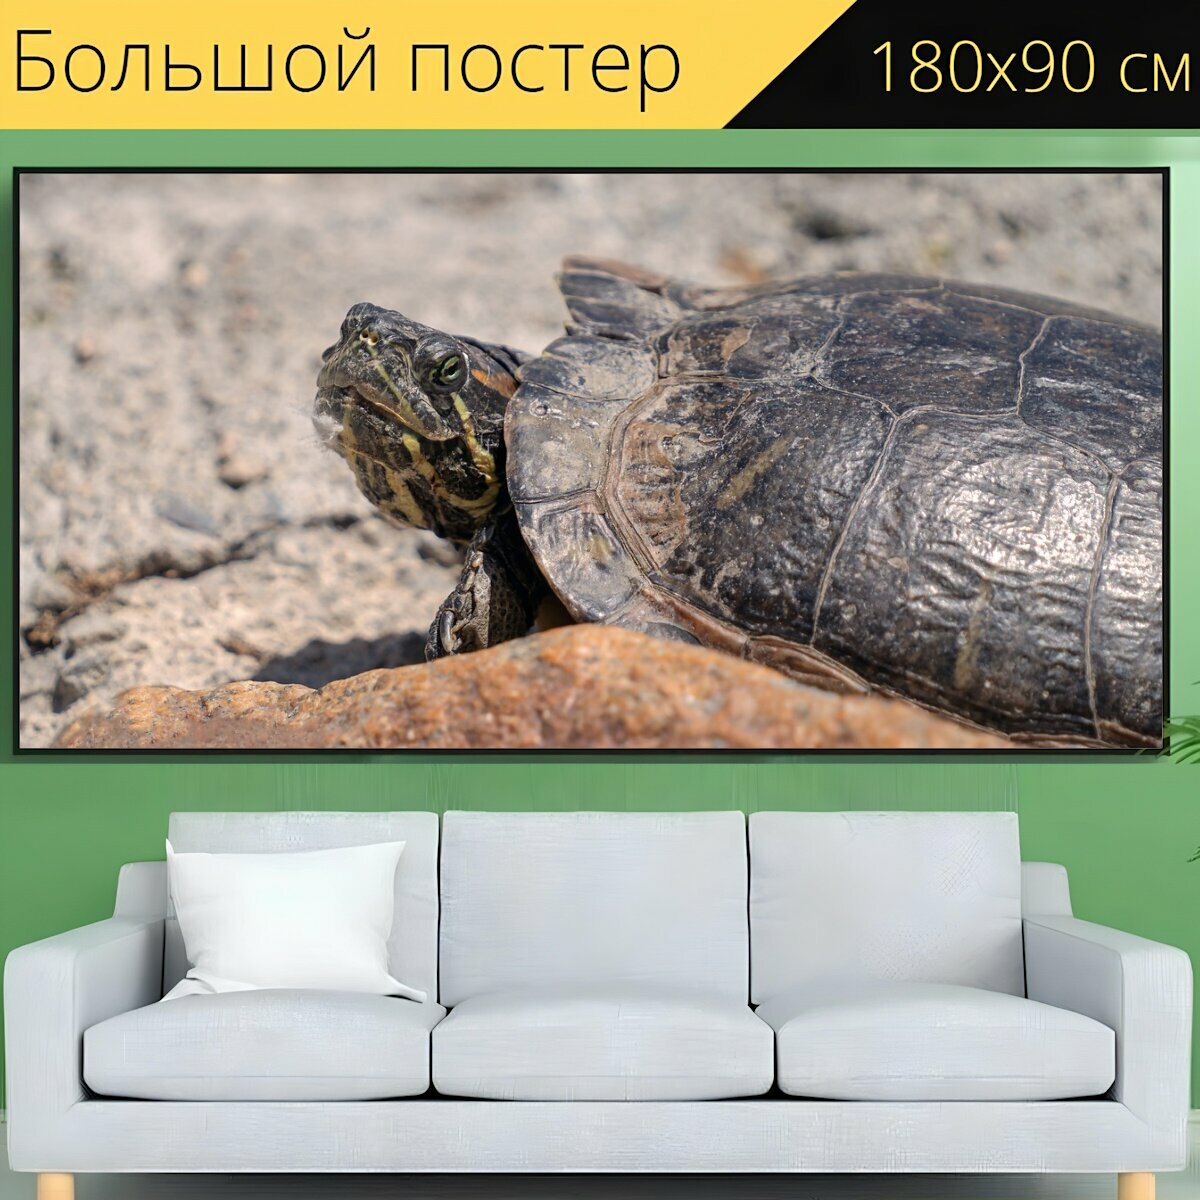 Большой постер "Черепаха, животное, дикая природа" 180 x 90 см. для интерьера